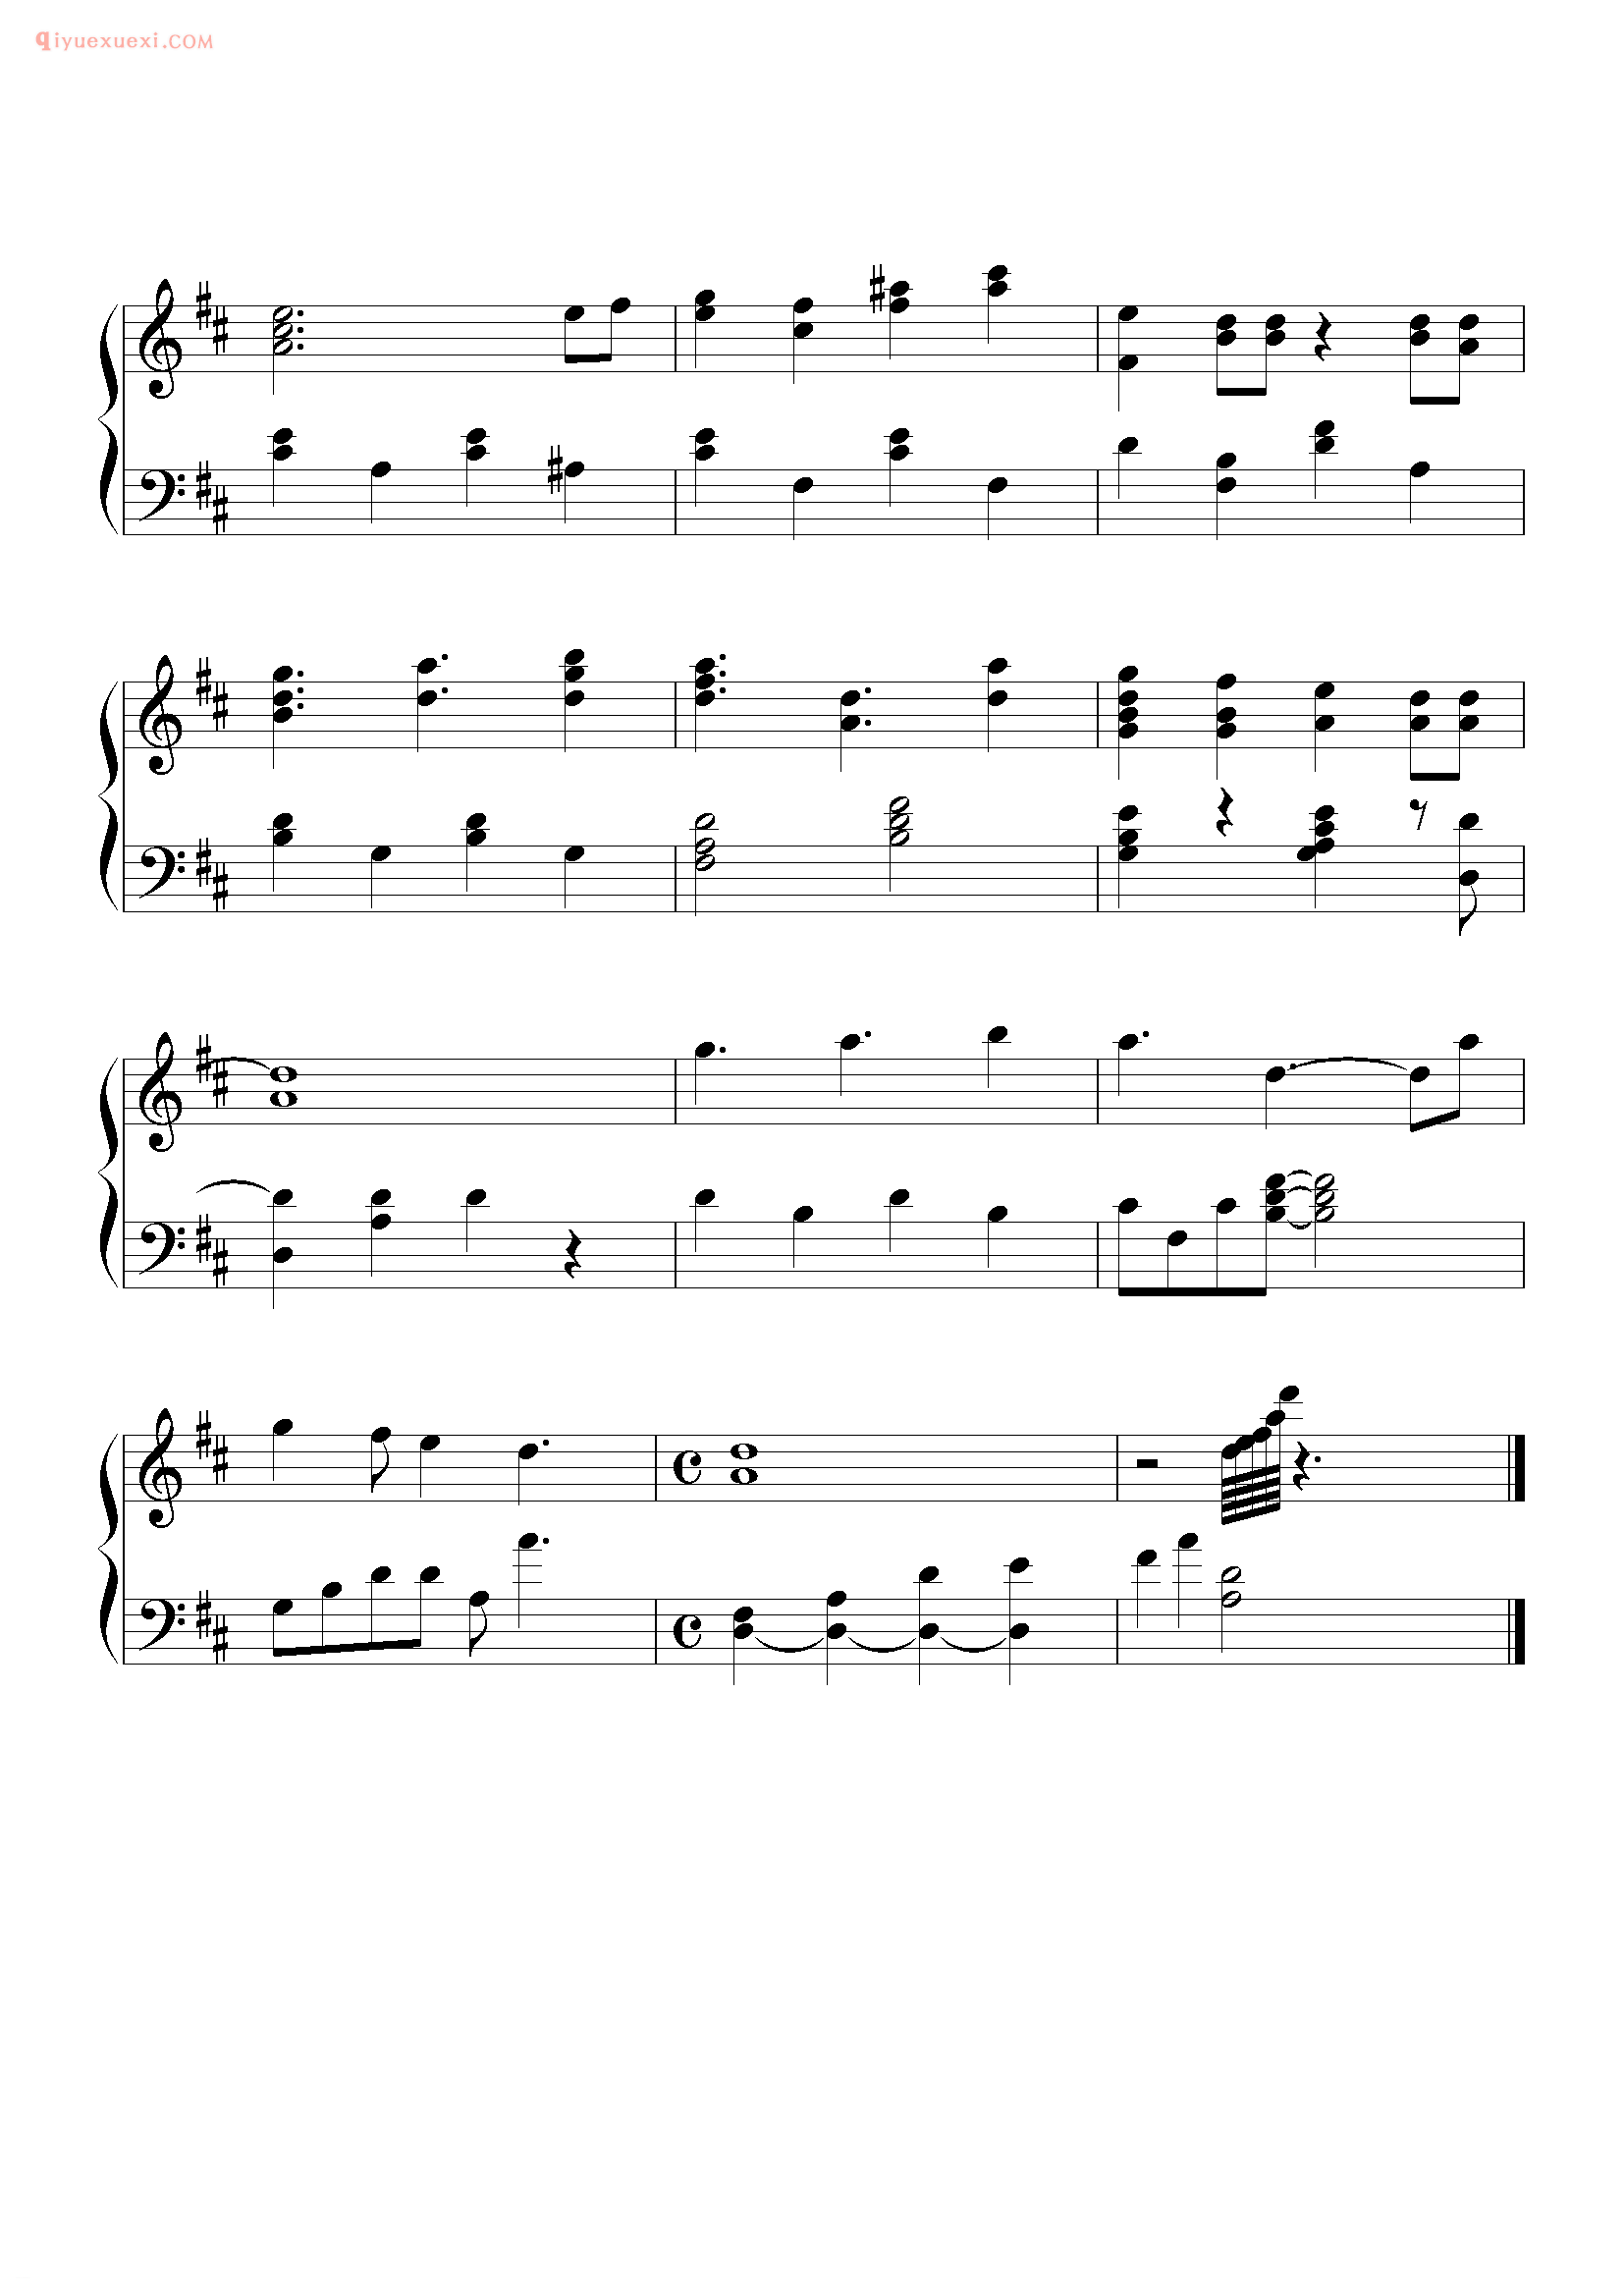 王菲歌曲《天上人间》钢琴谱五线谱